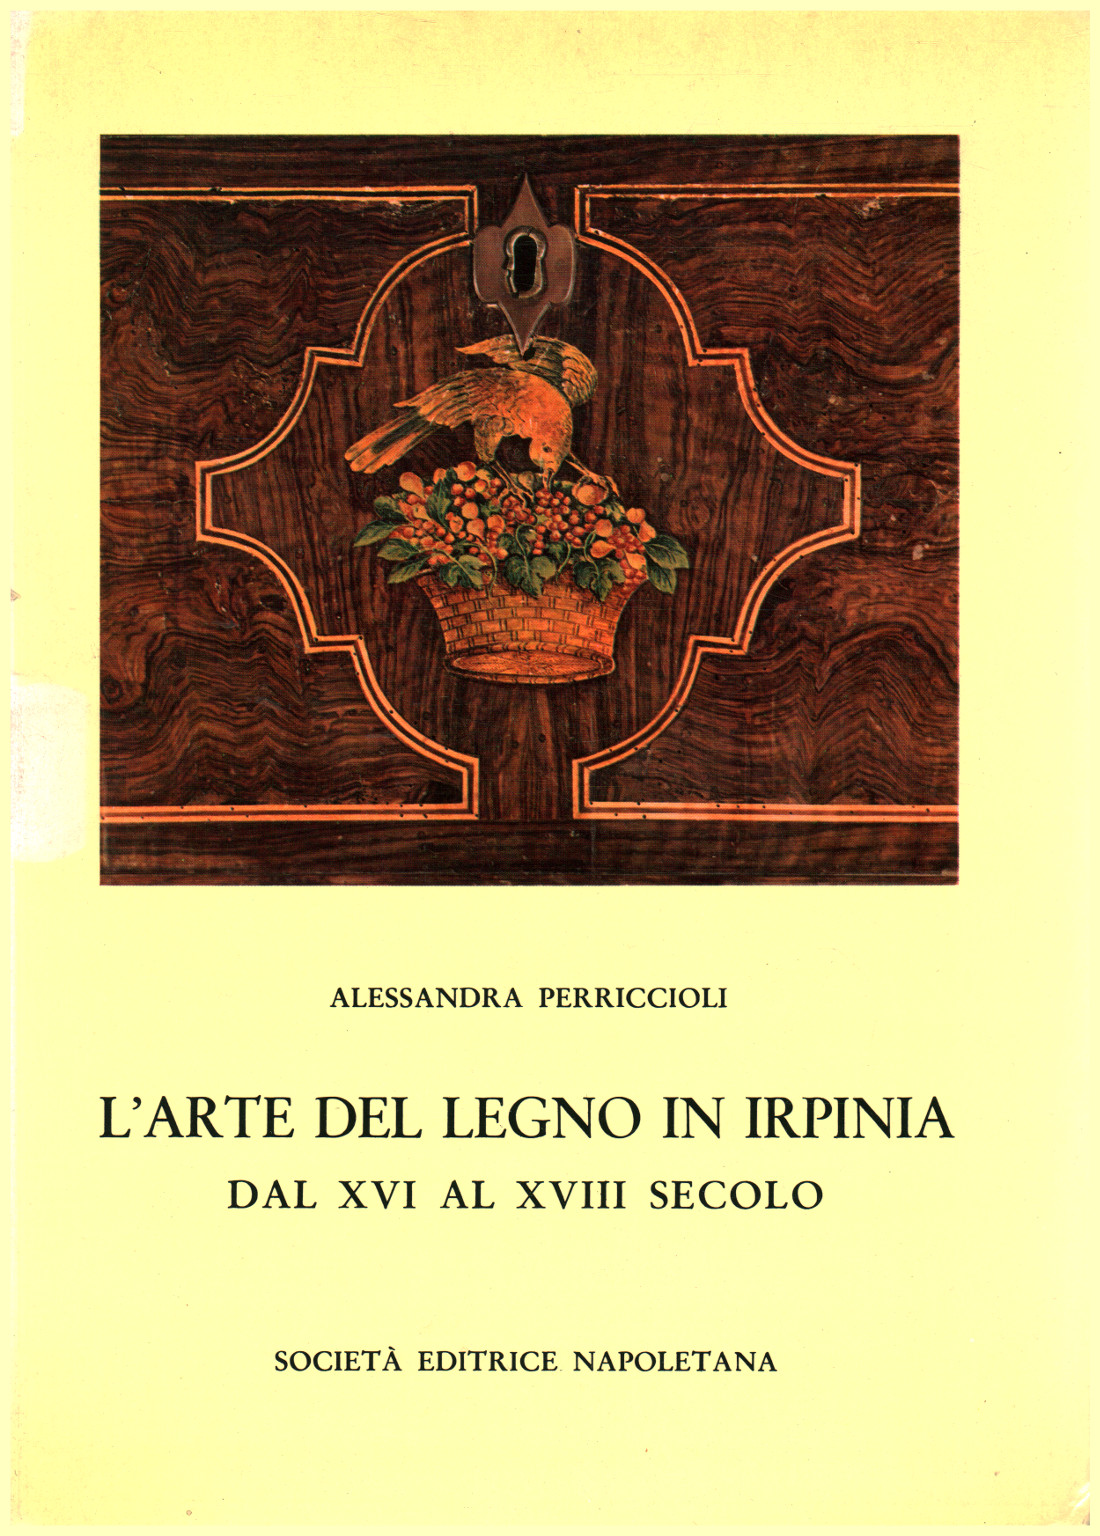 El arte de la madera en Irpina del siglo XVI al XVIII, Alessandra Perriccioli